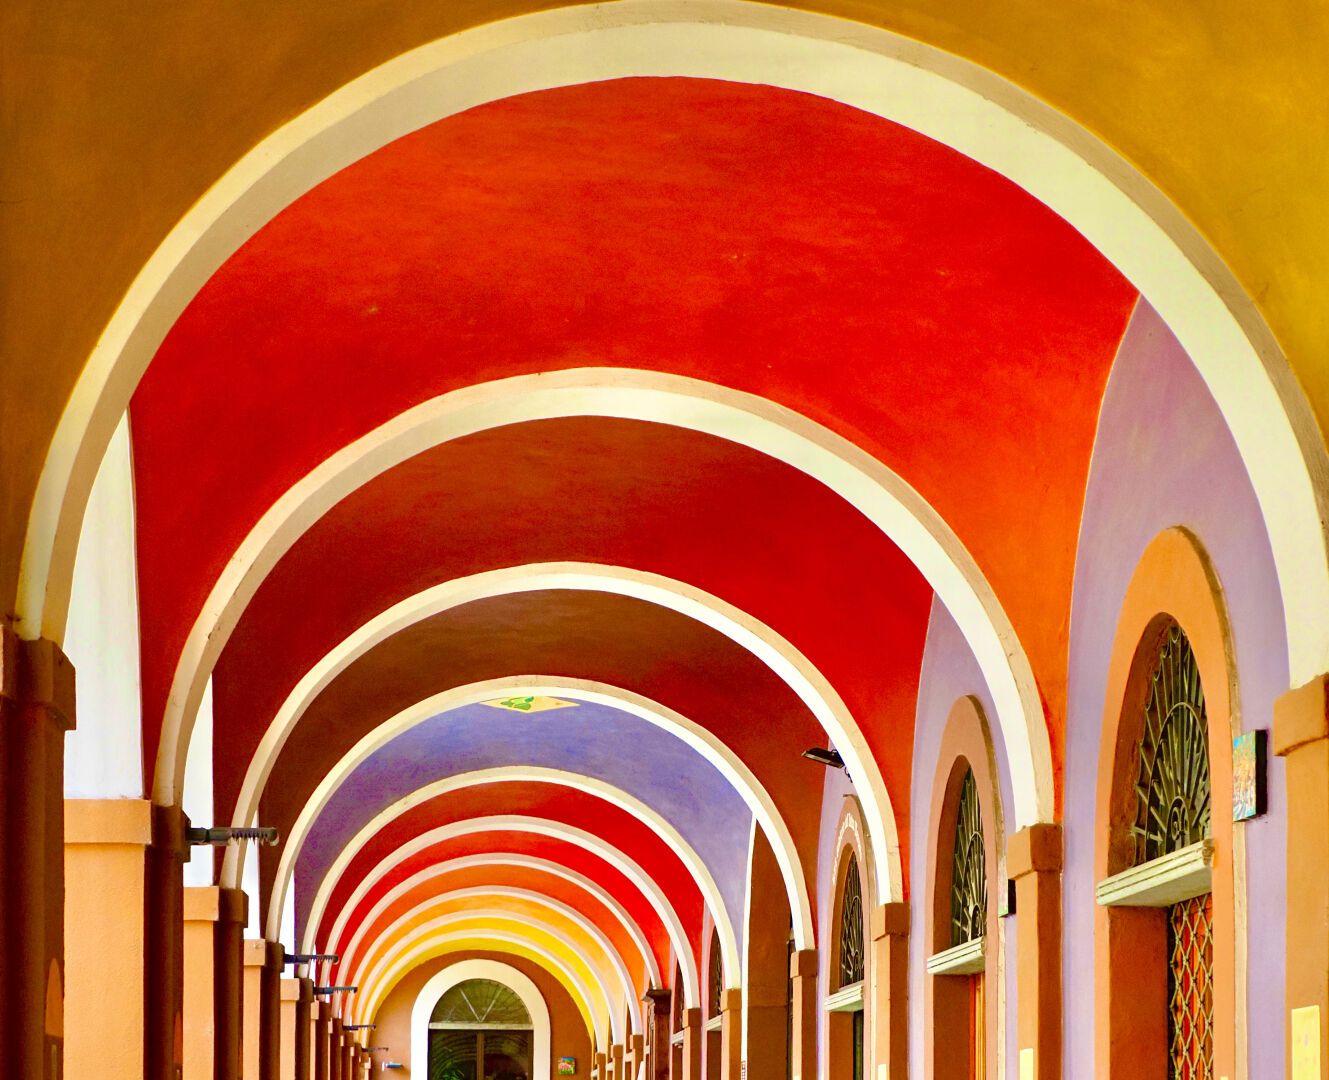 Arches in Castagnole delle Lanze

#photography #architecture #piedmont